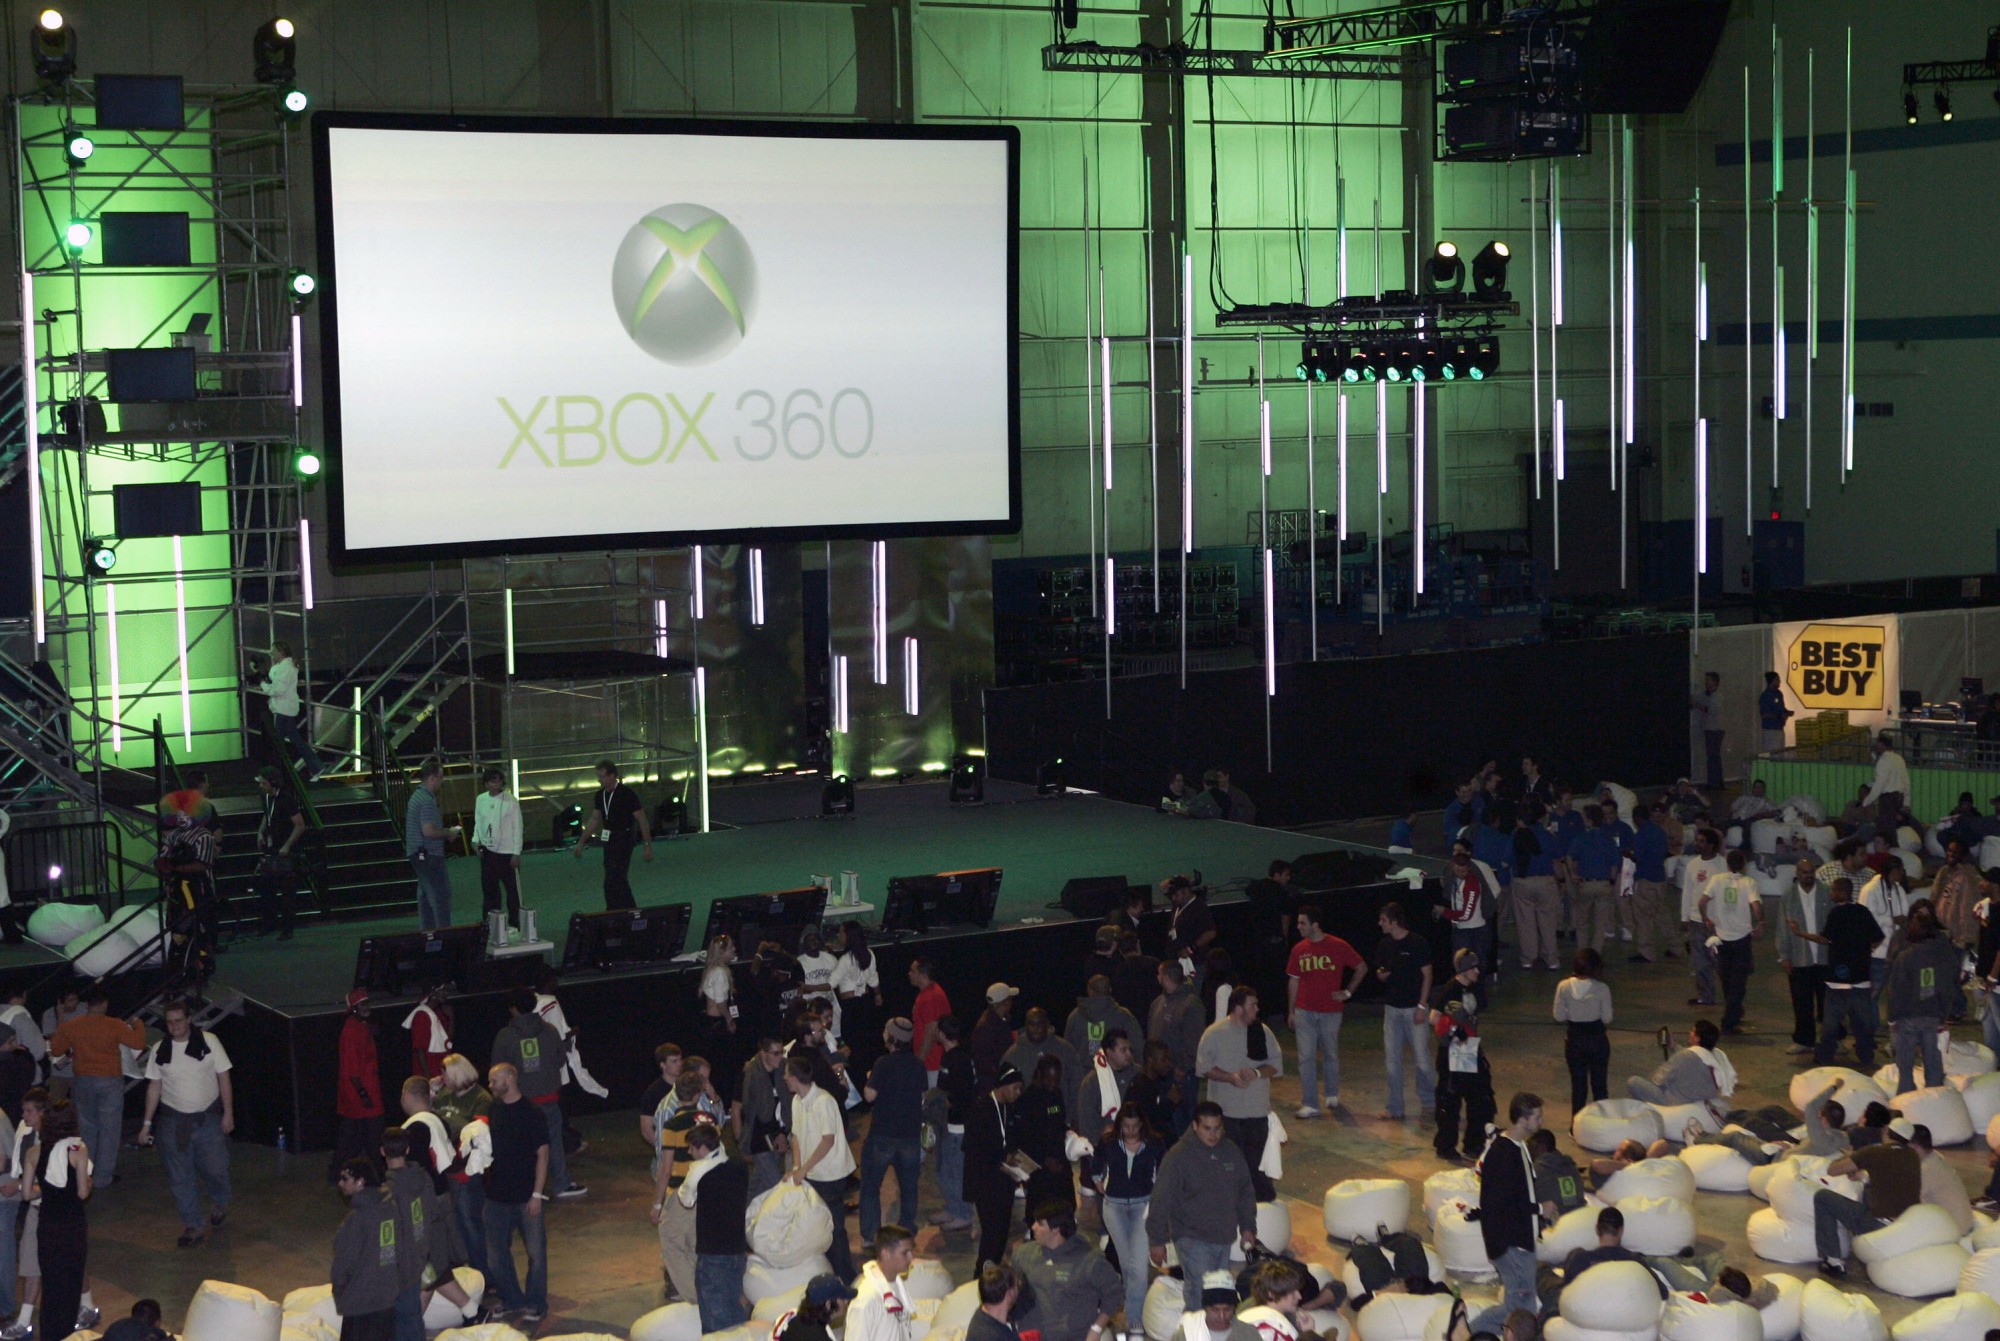 Microsoft schließt den Xbox 360-Marktplatz nicht, die Annahme ist weiterhin möglich